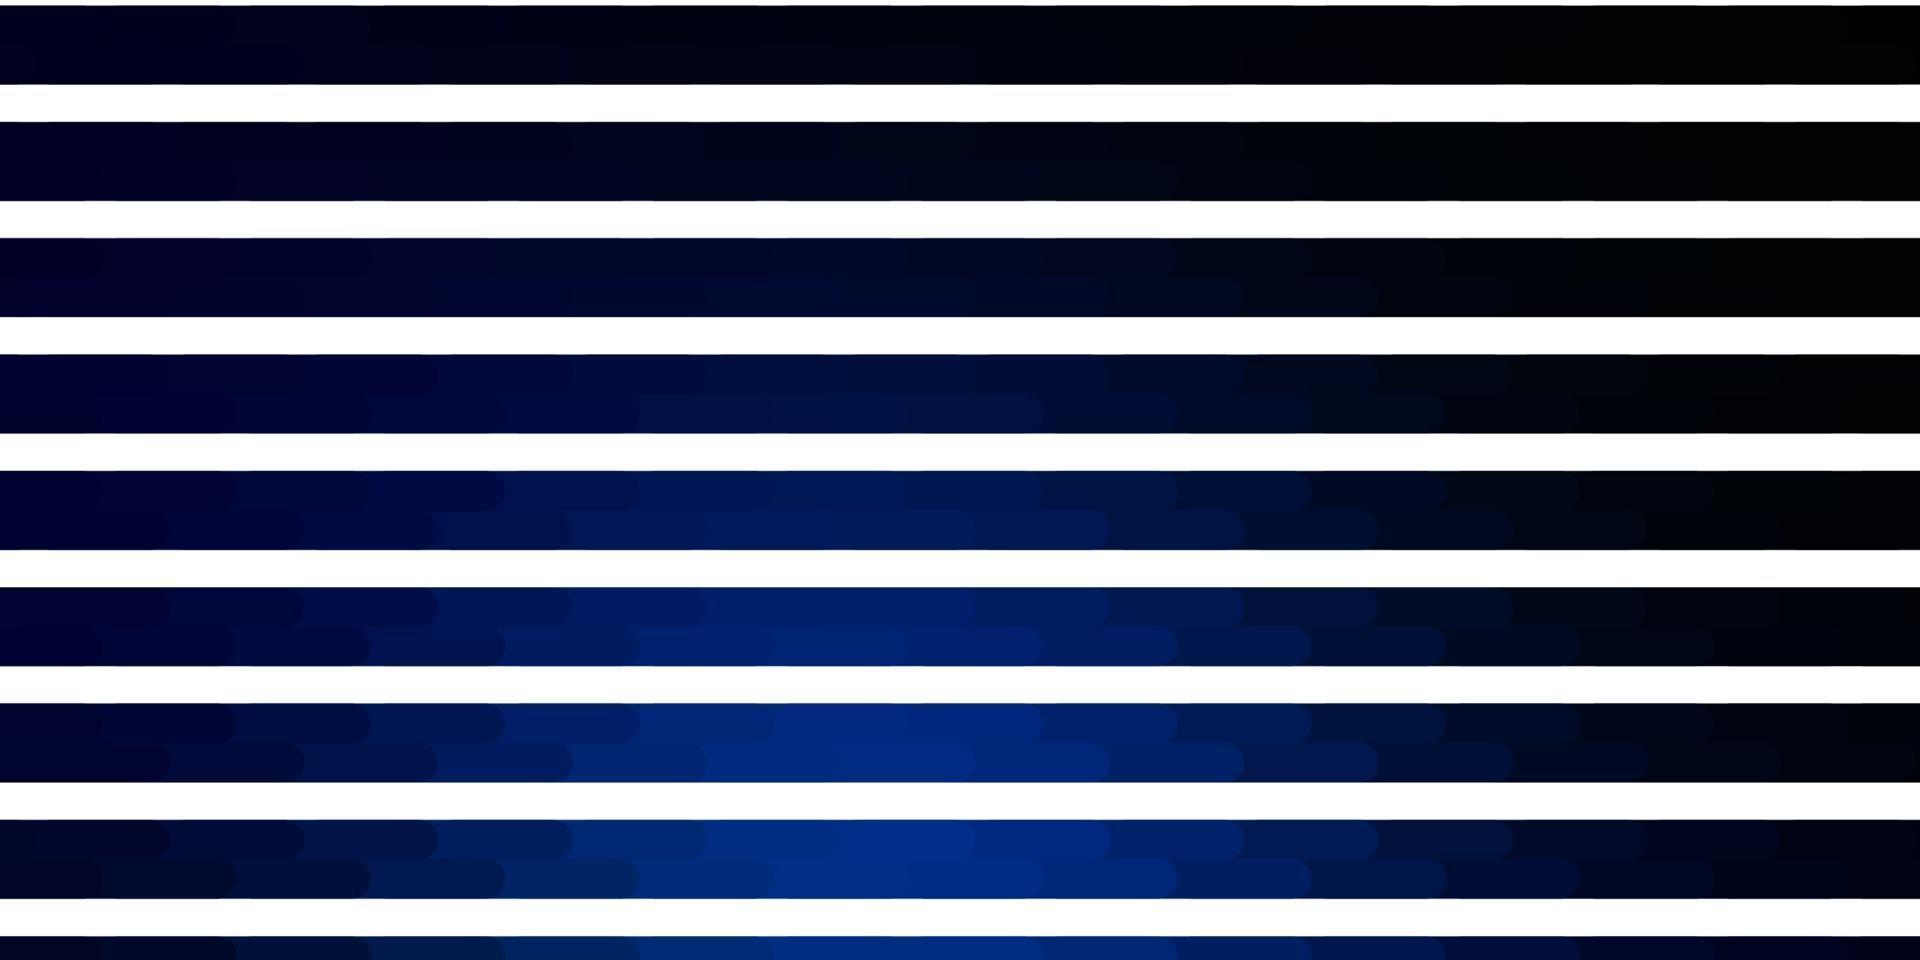 Telón de fondo de vector azul oscuro con líneas.